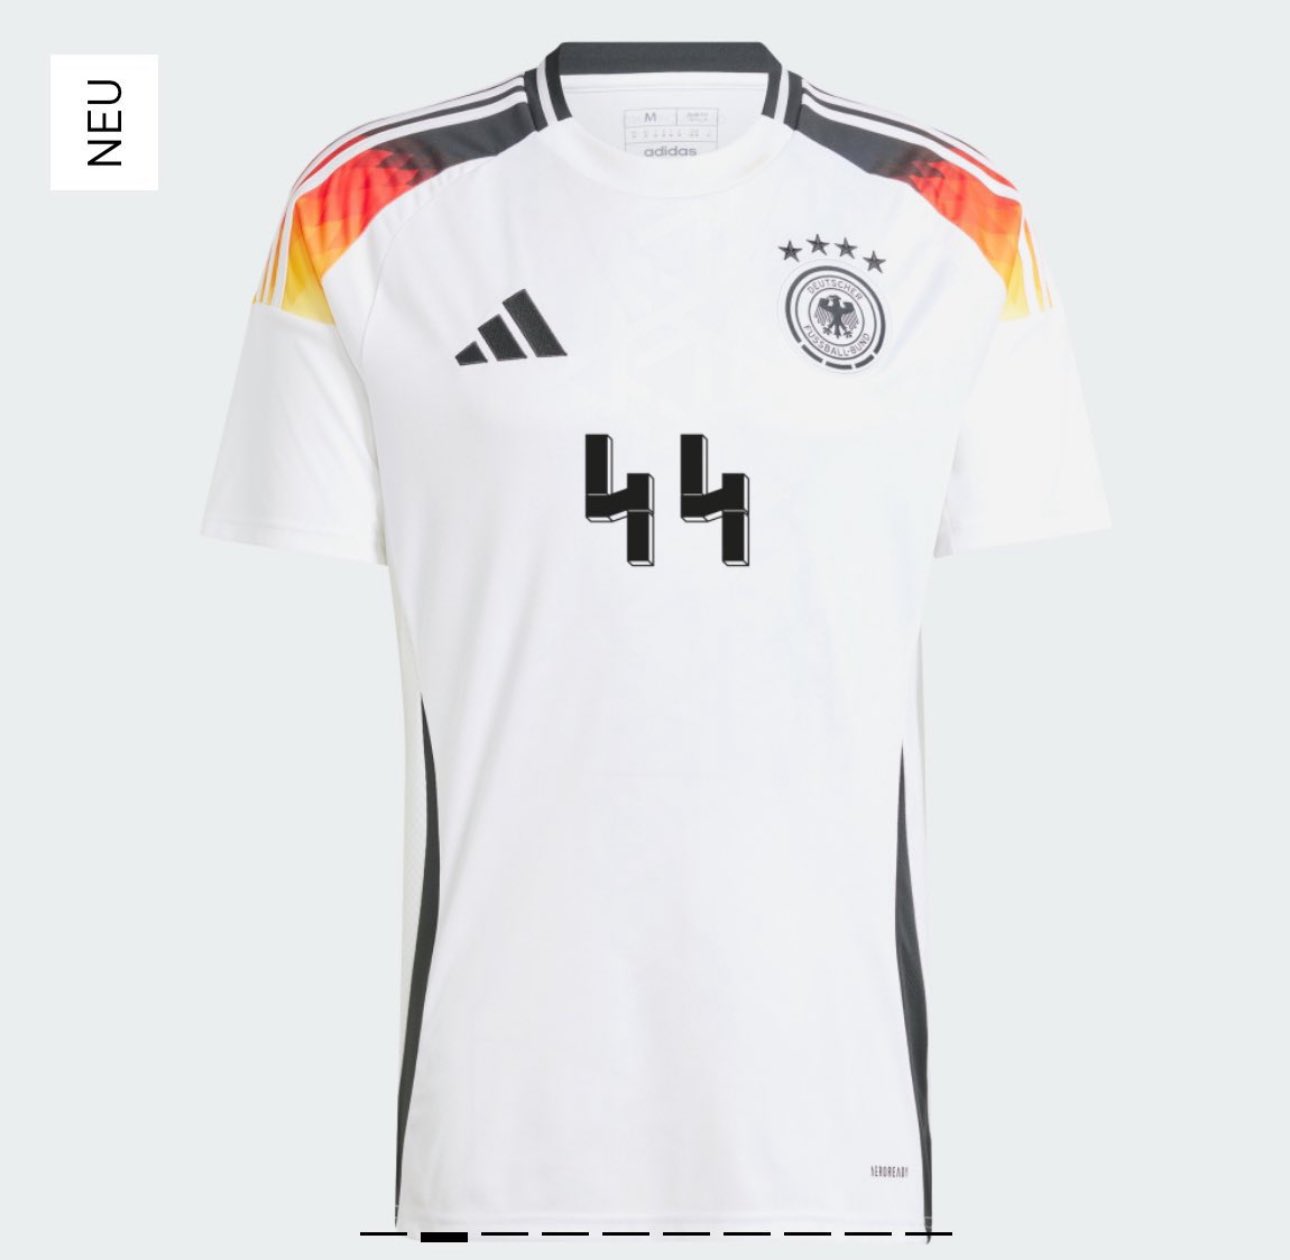 Camisa da Alemanha personalizada com o número 44